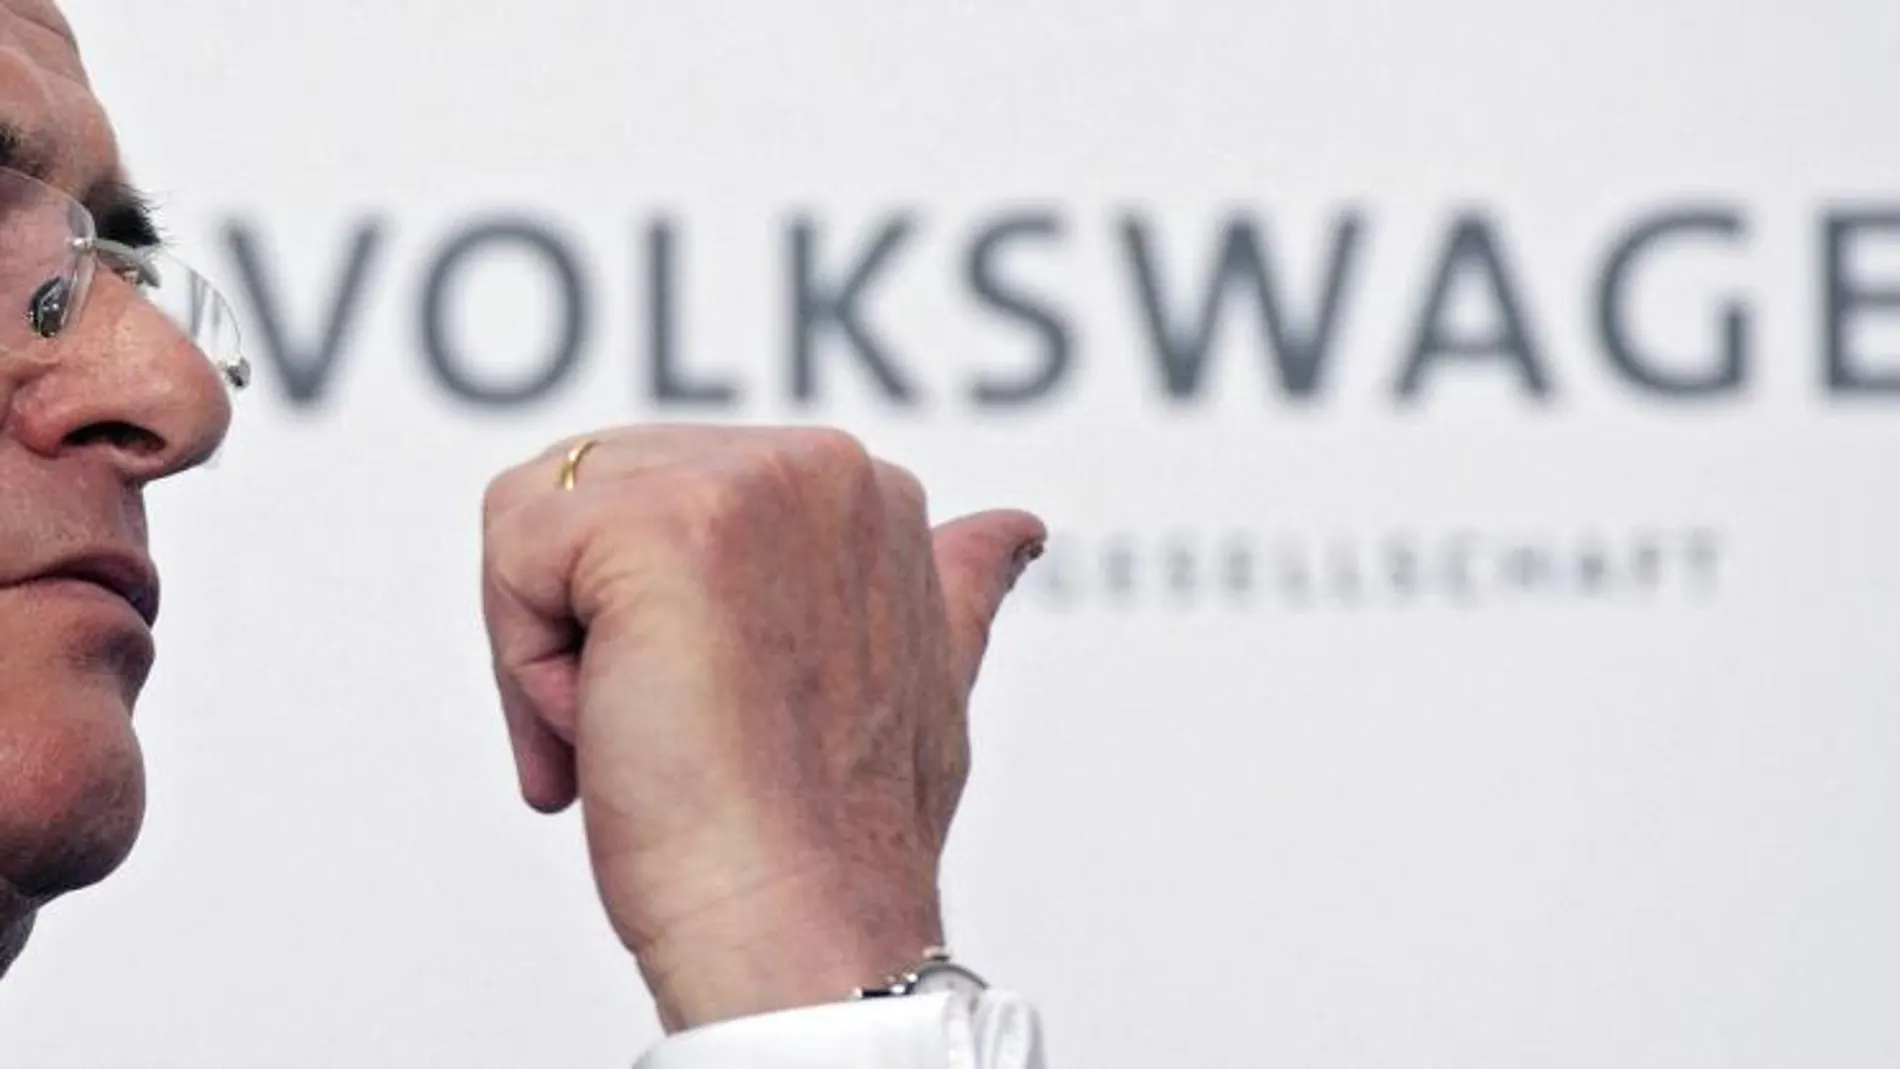 Imagen de archivo datada el 14 de marzo del 2013 del presidente de Volkswagen, Martin Winterkorn, en Wolfsburgo